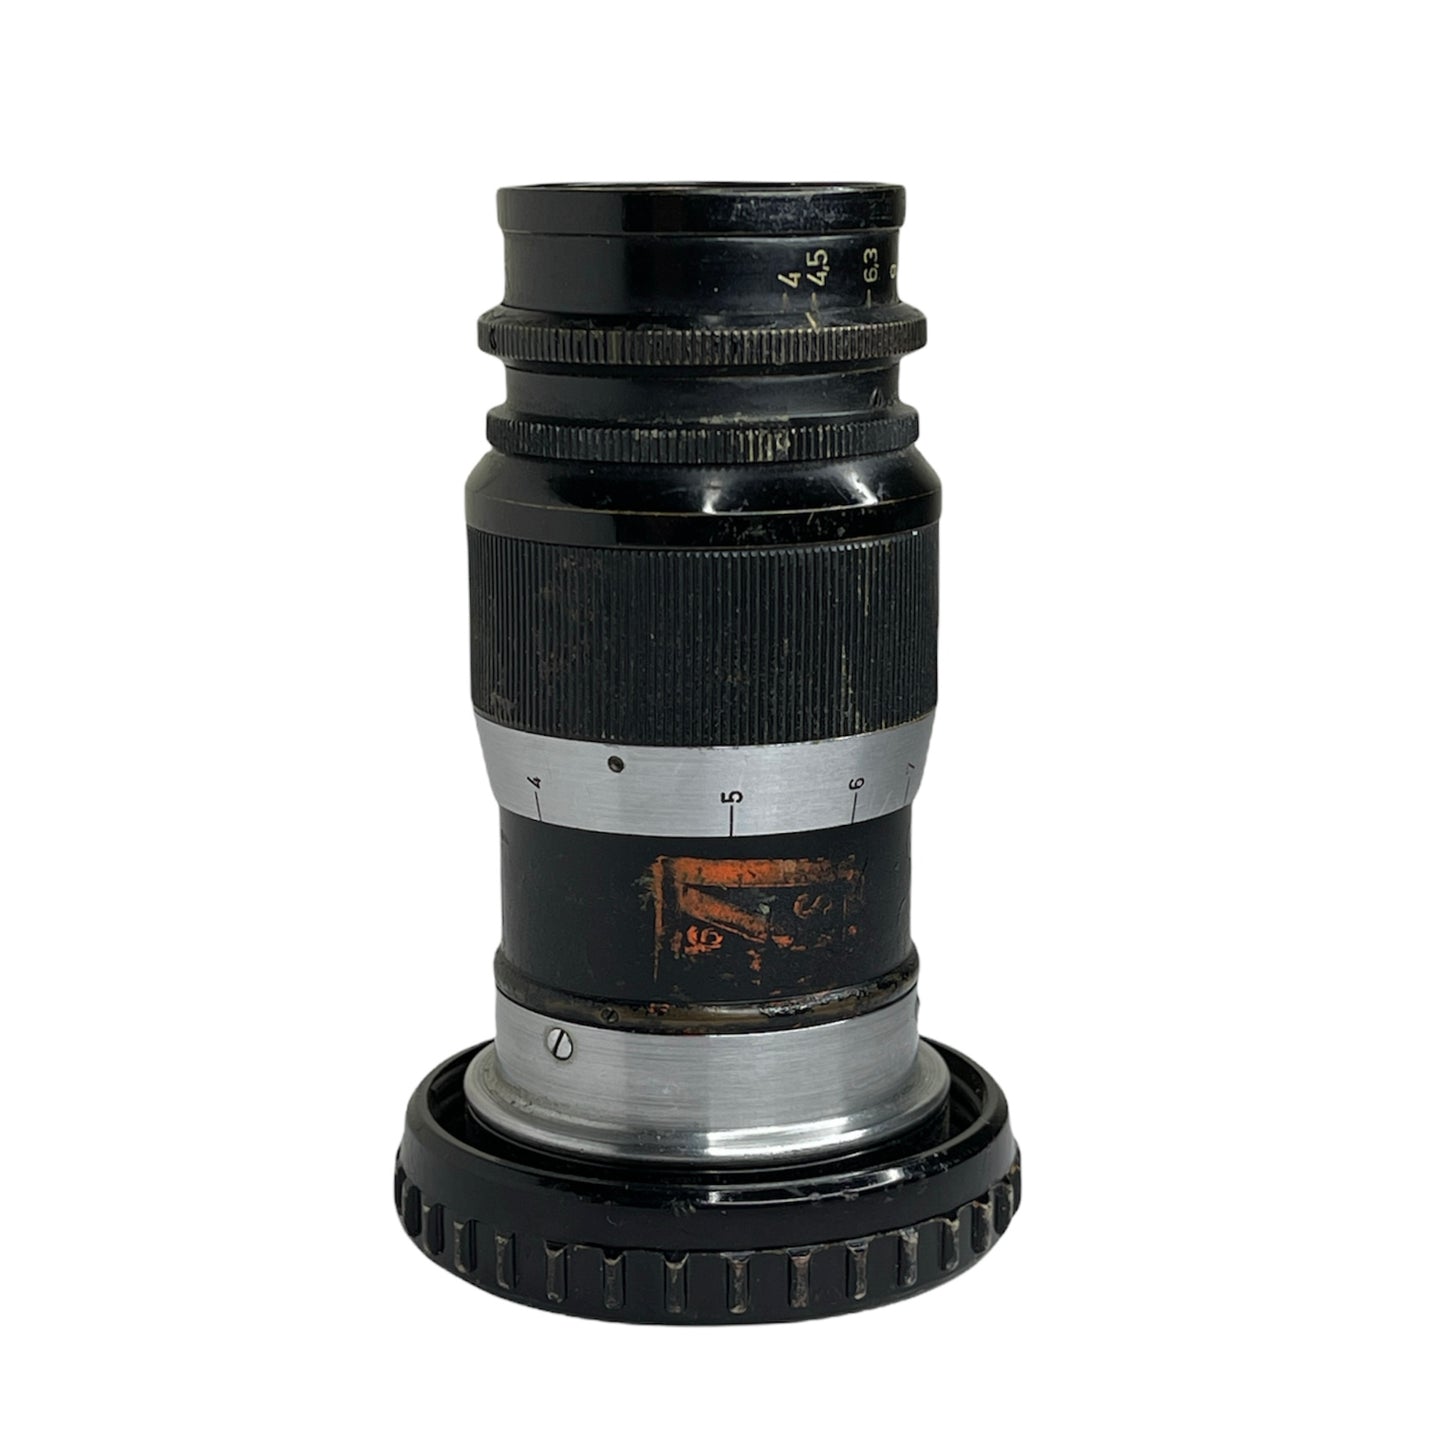 Leica 9cm F/4 Elmar Military Marking L#583570